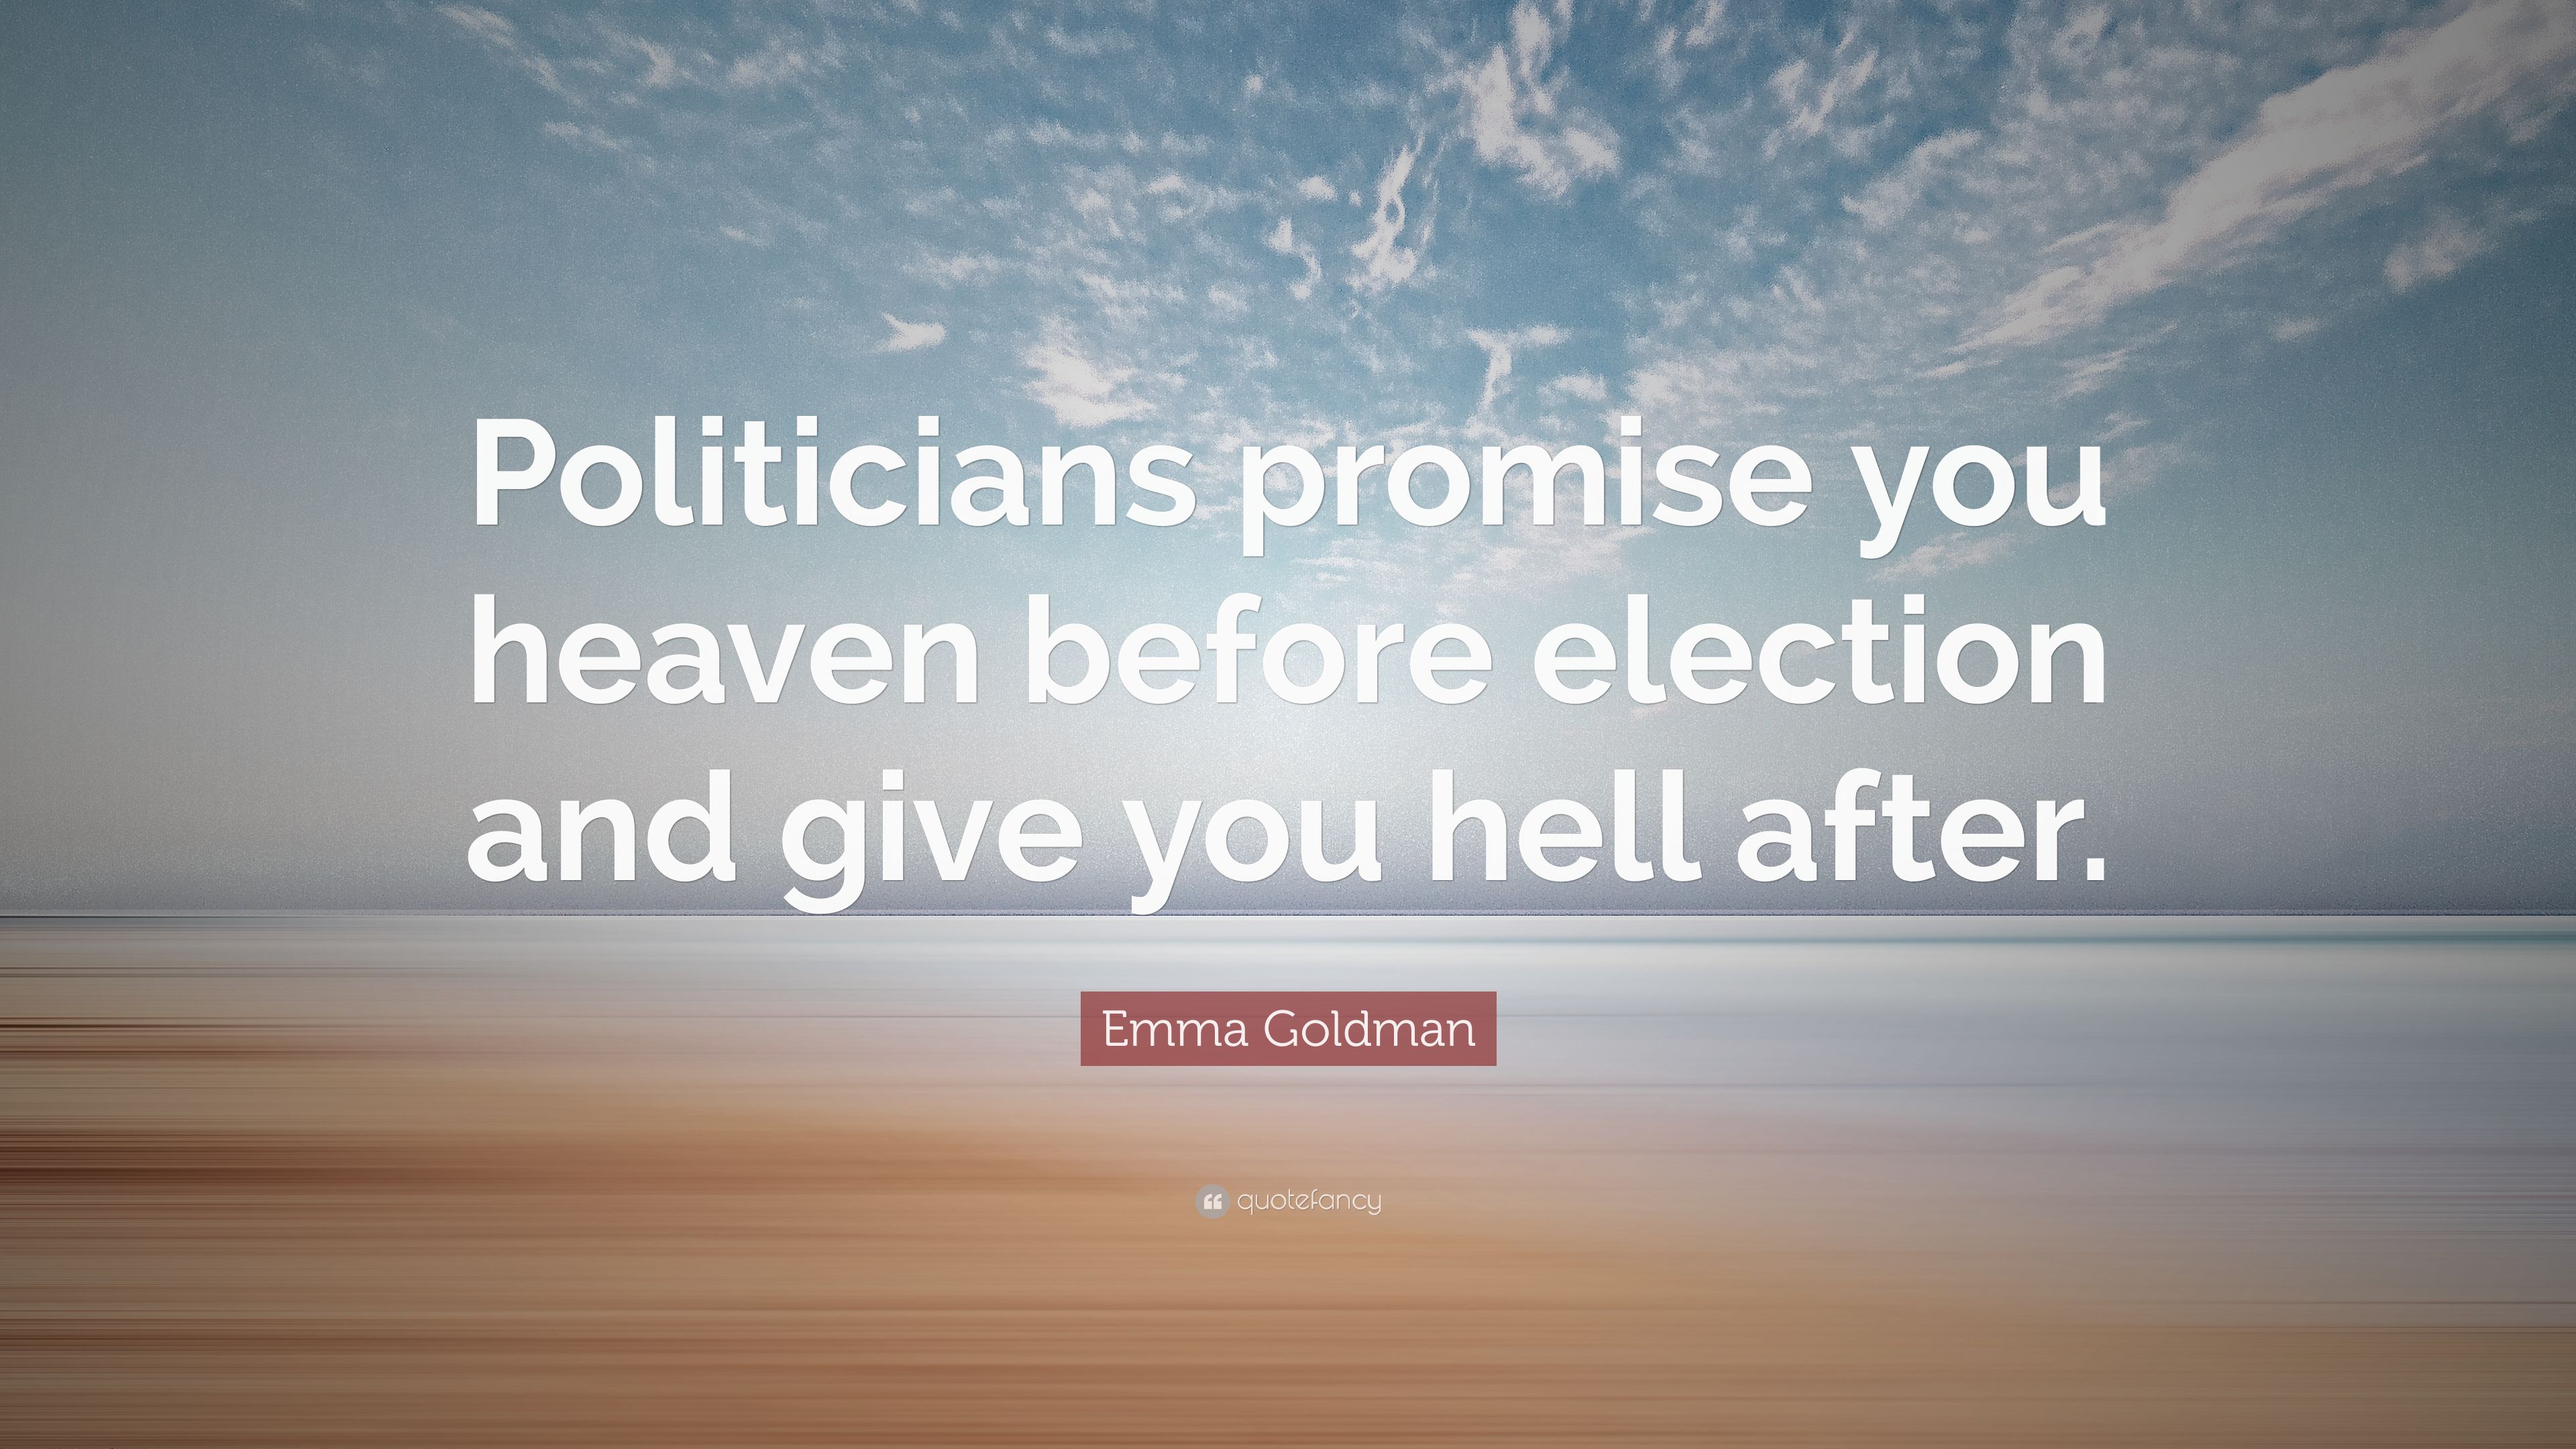 Politicians' promises